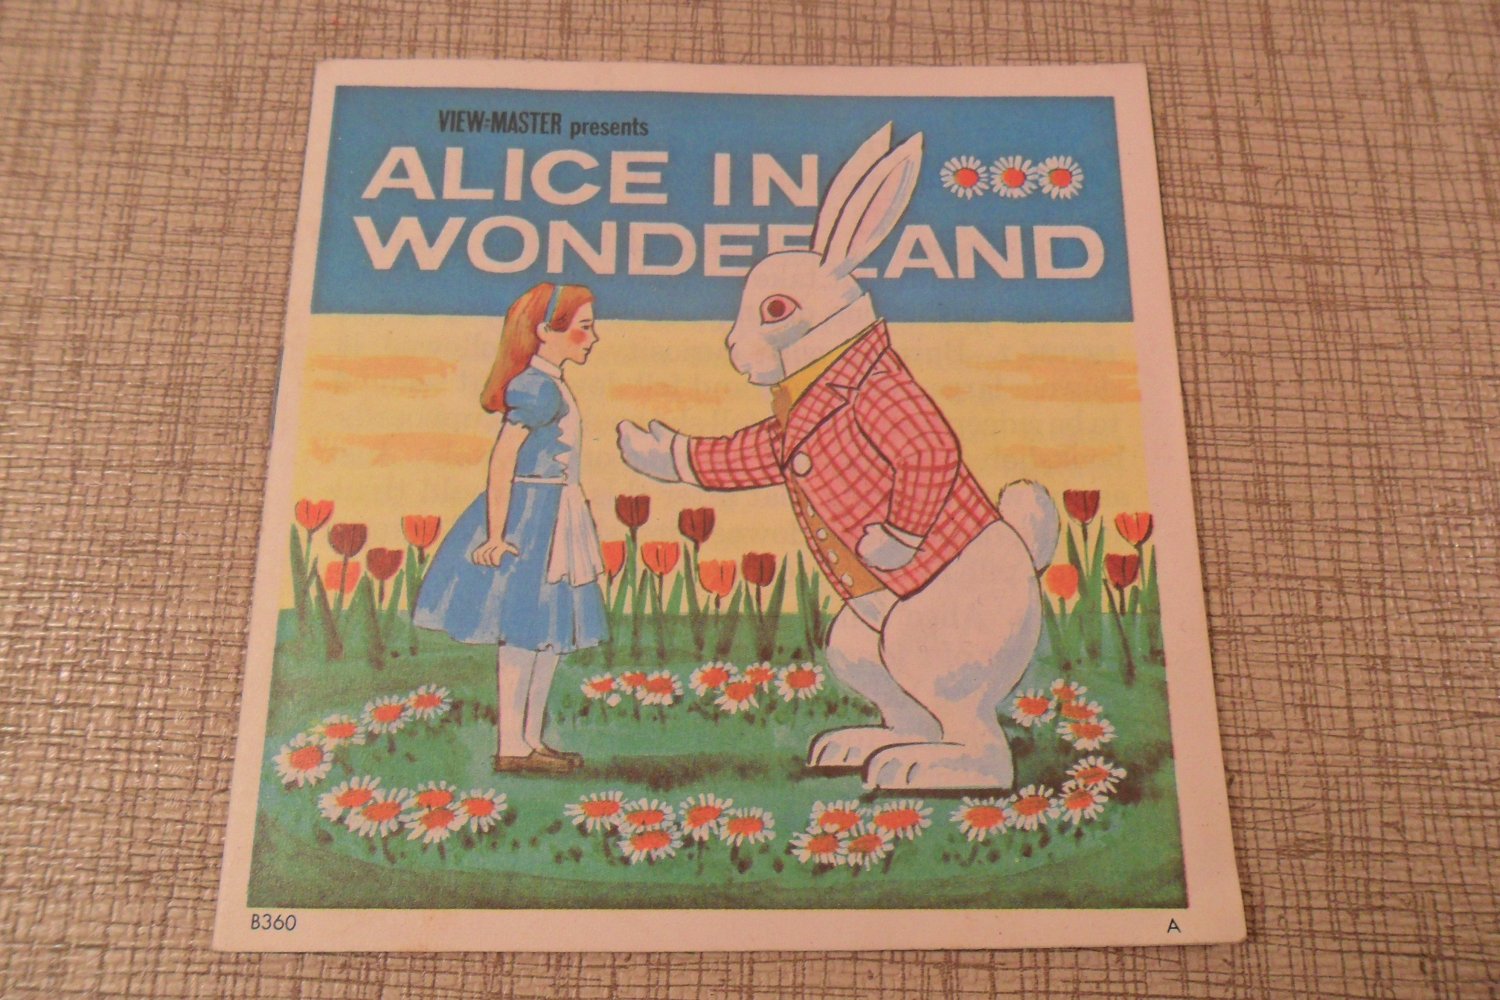 1952 View-Master Alice In Wonderland book